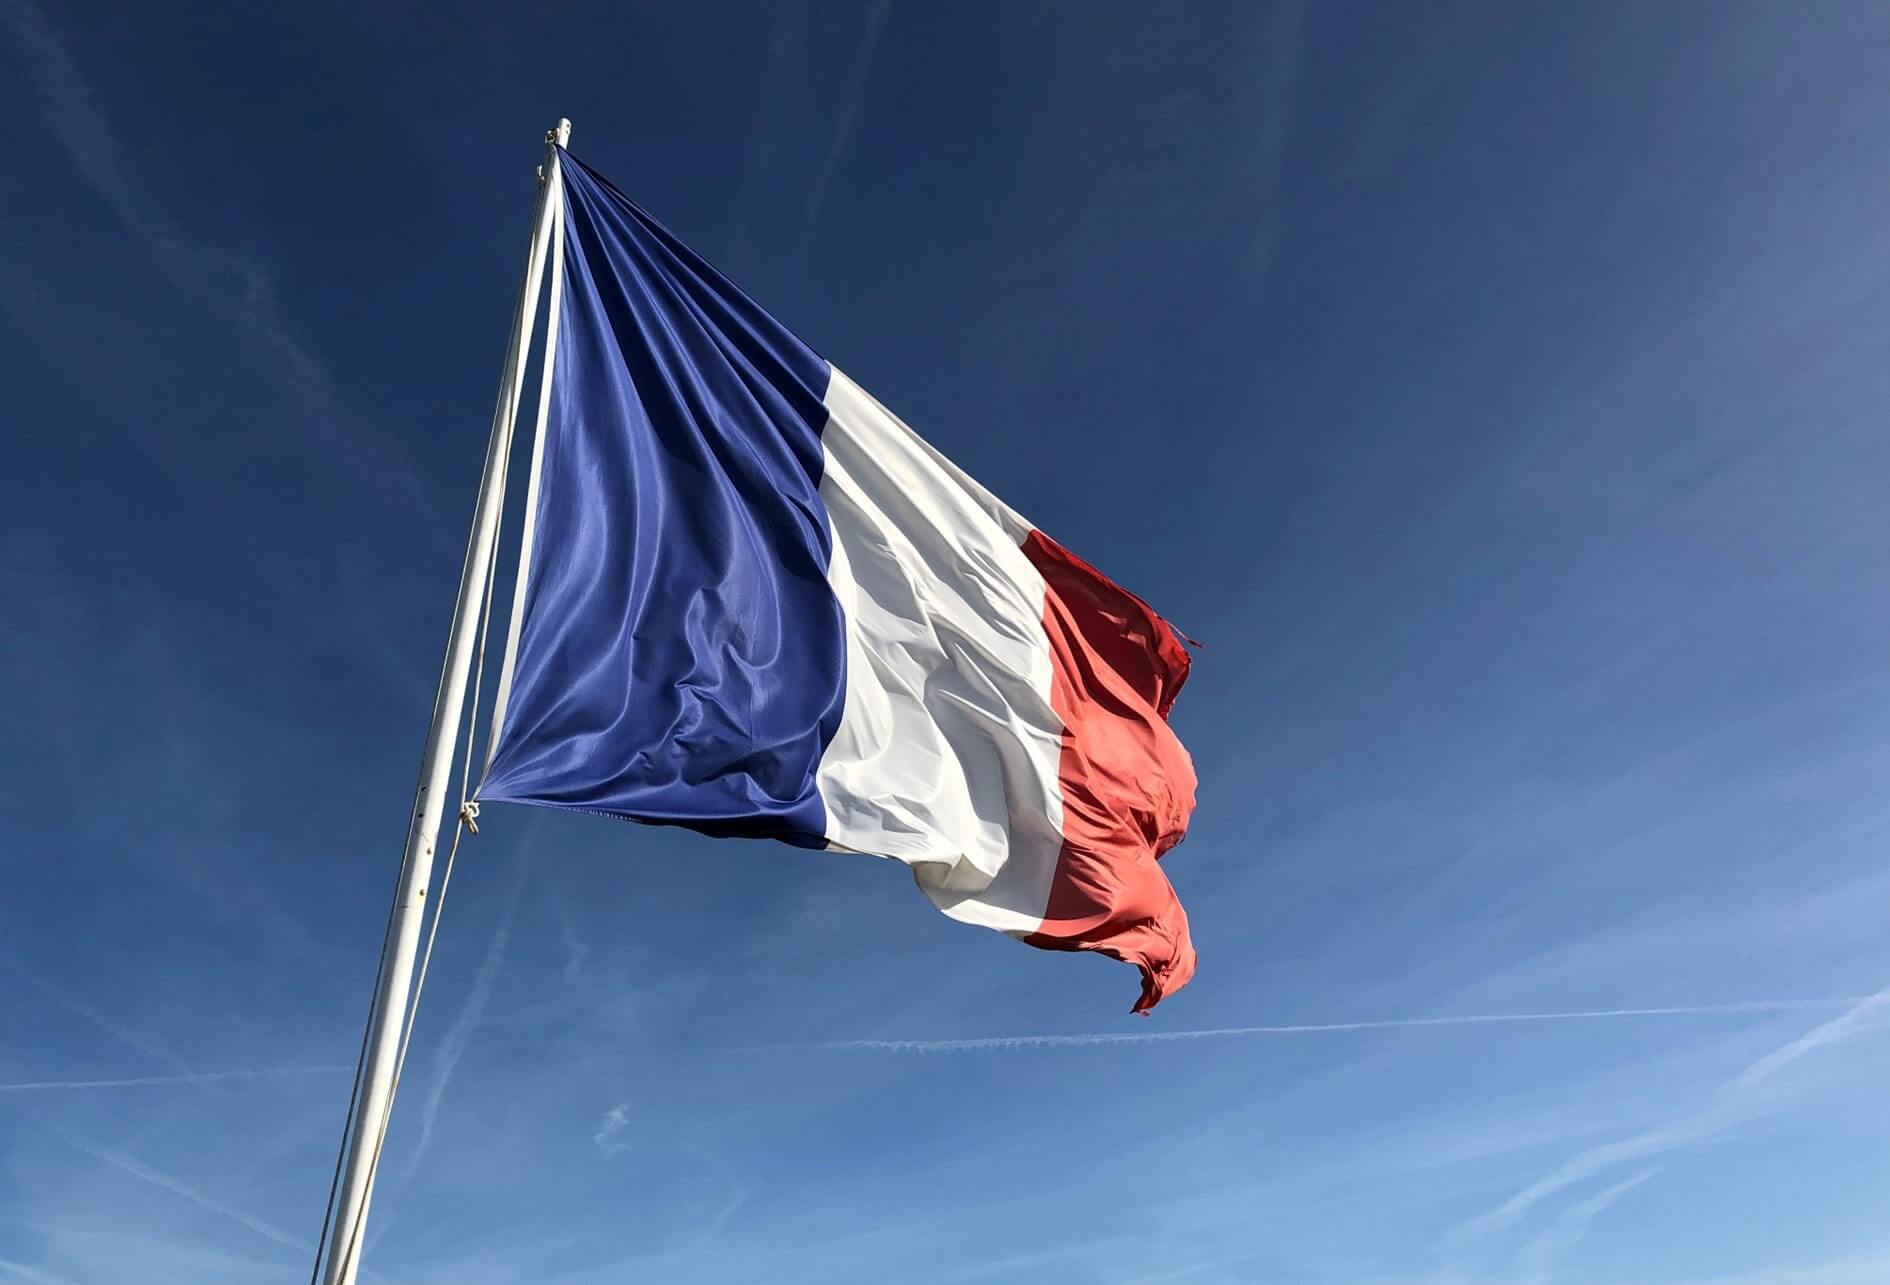 Couleur du drapeau français flottant au vent au sommet d'un mât, au fond le ciel en camaïeu de bleu.